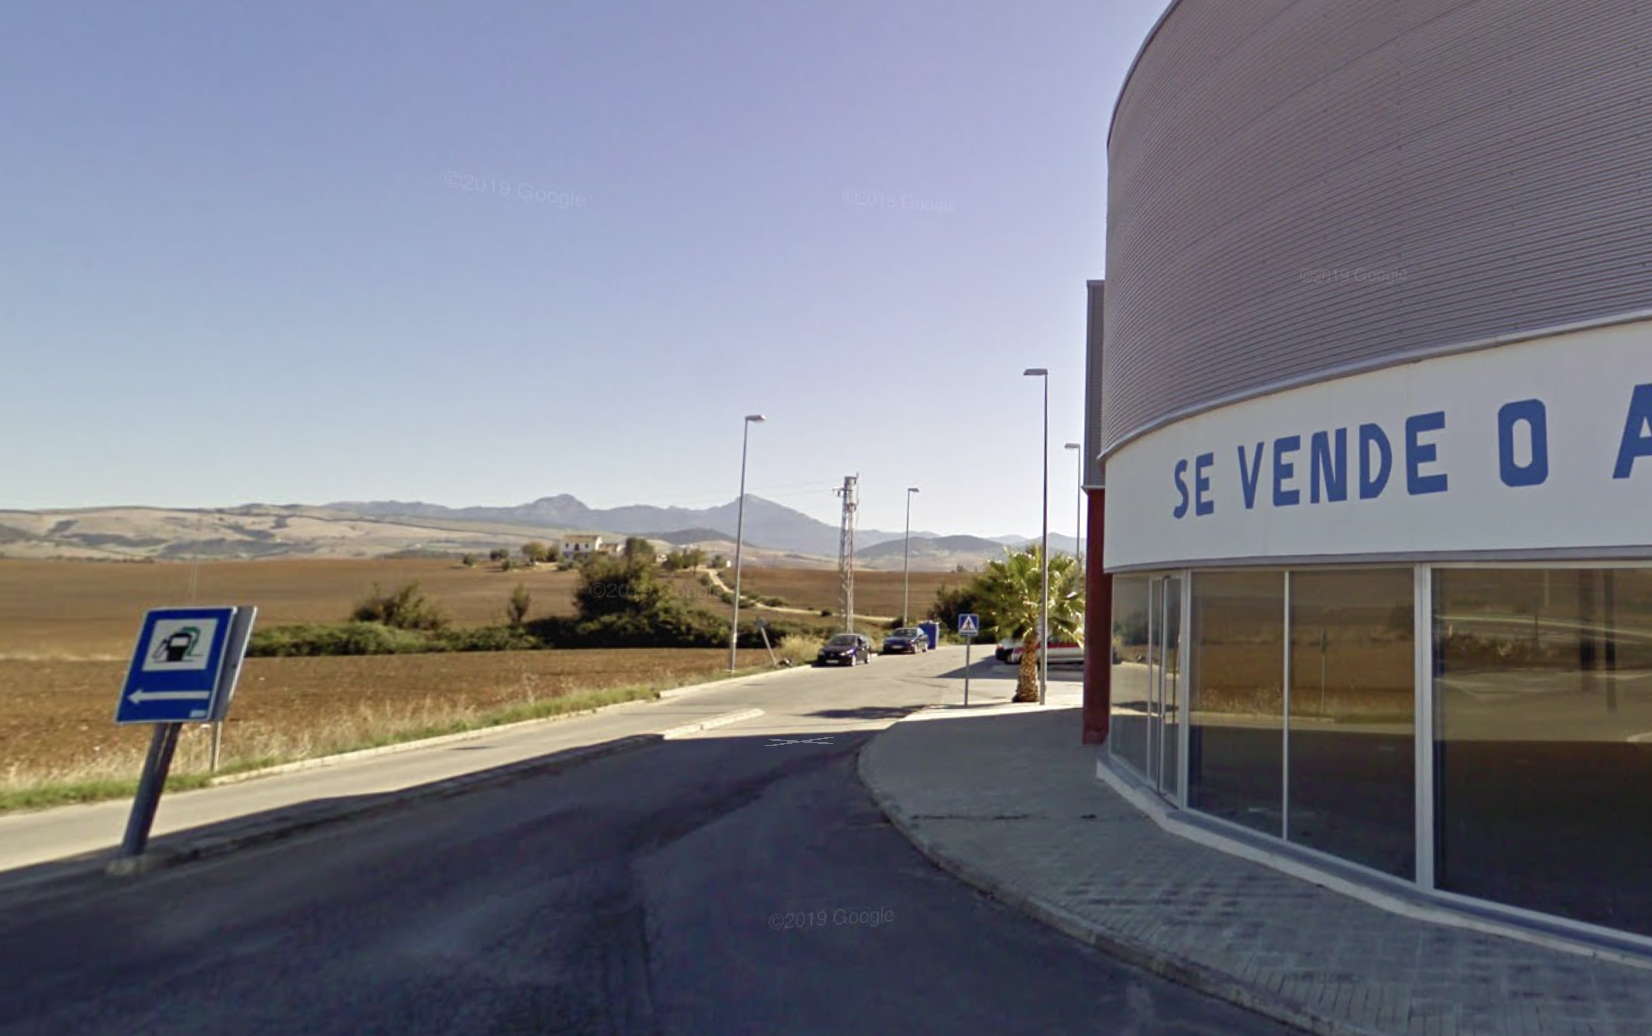 Polígono industrial de Villamartín donde ha tenido lugar el accidente del trabajador, en una imagen de Google.